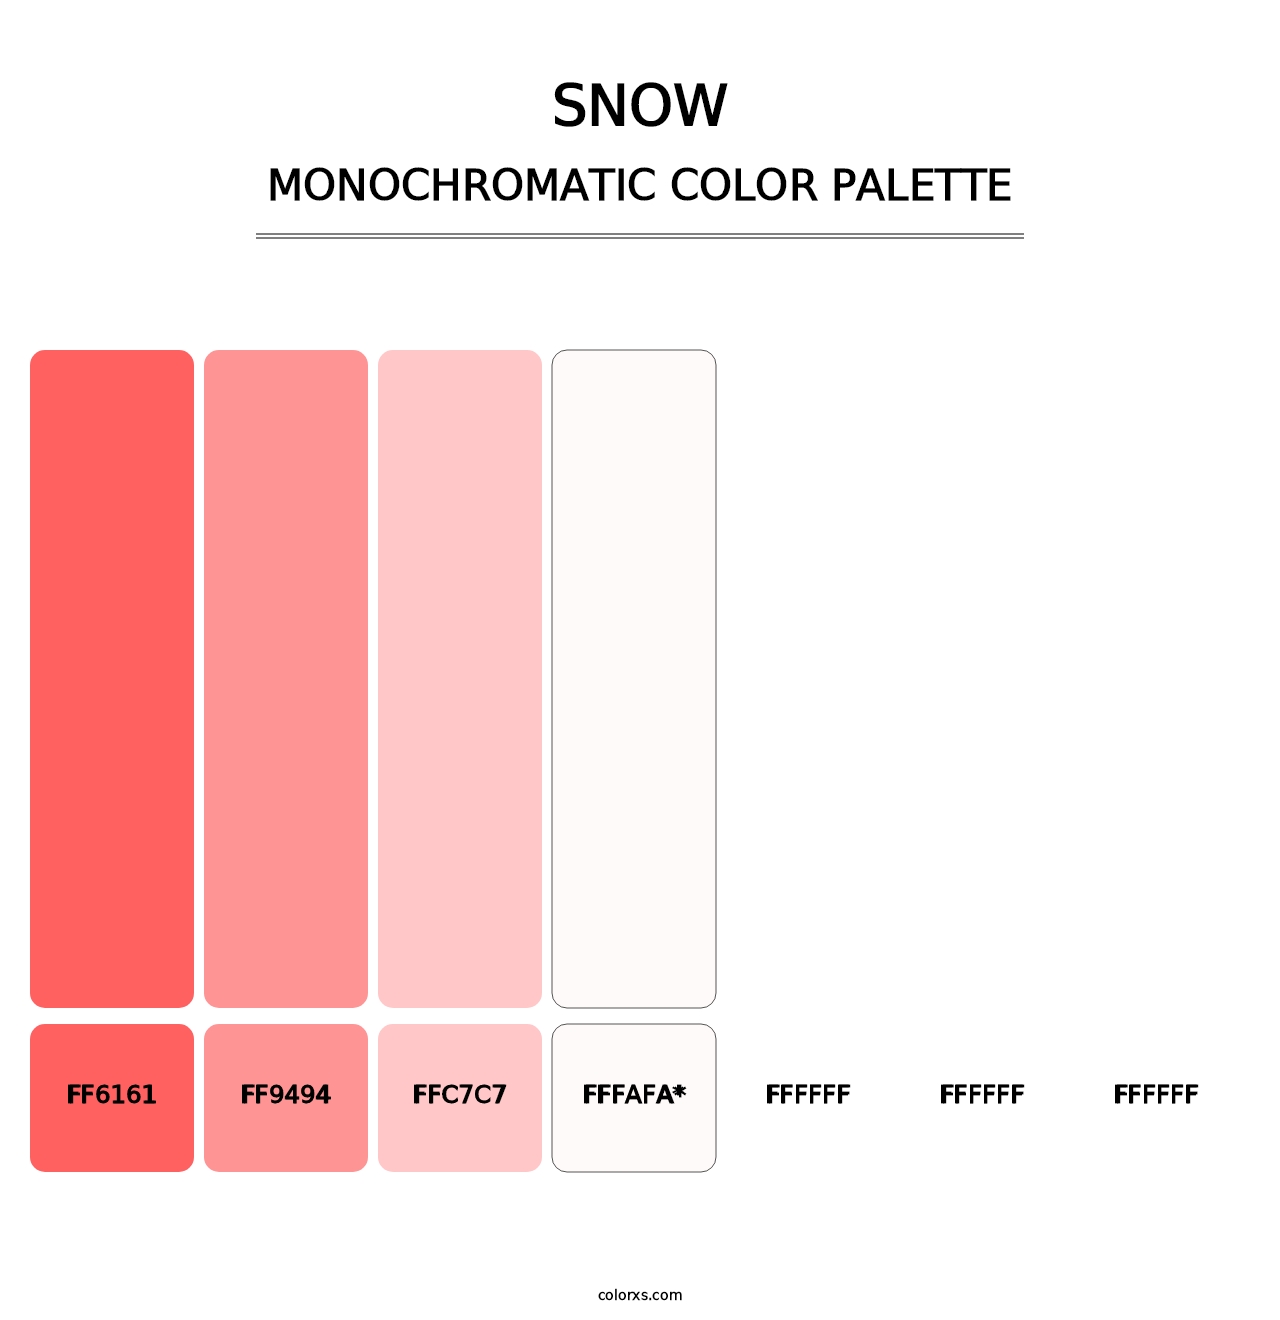 Snow - Monochromatic Color Palette